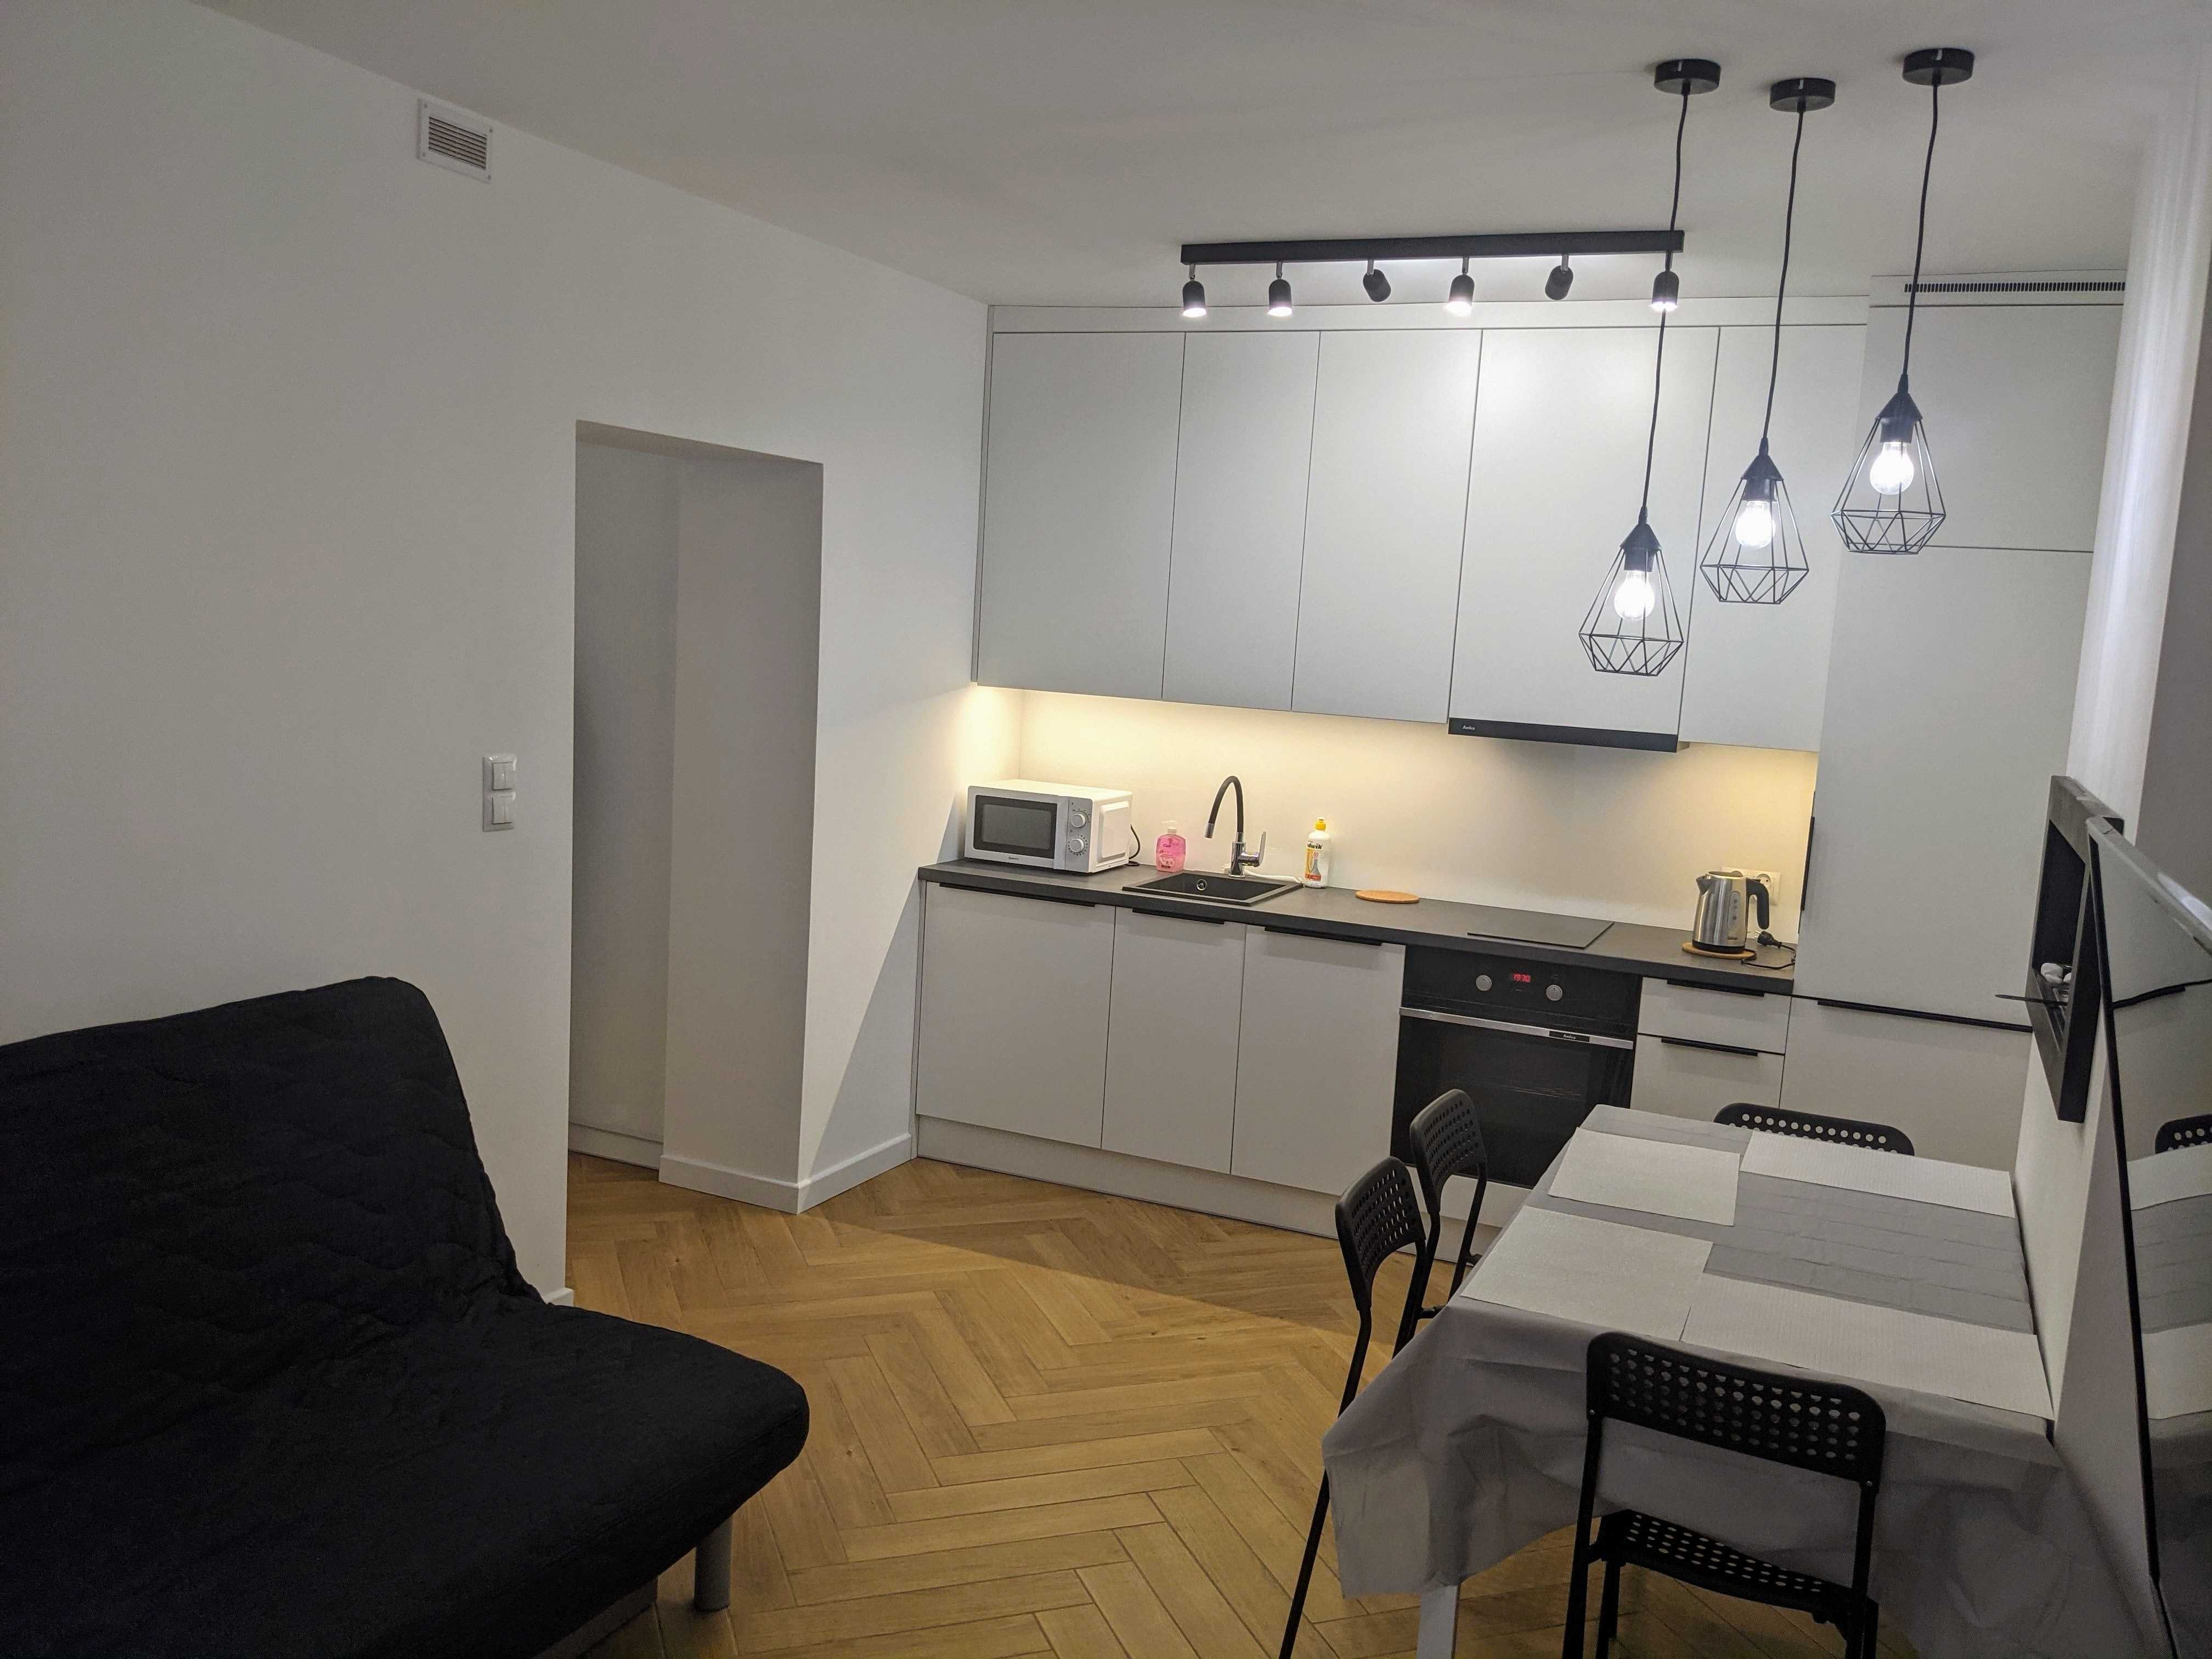 Gdynia Śródmieście: Mieszkanie na wynajem długoterminowy